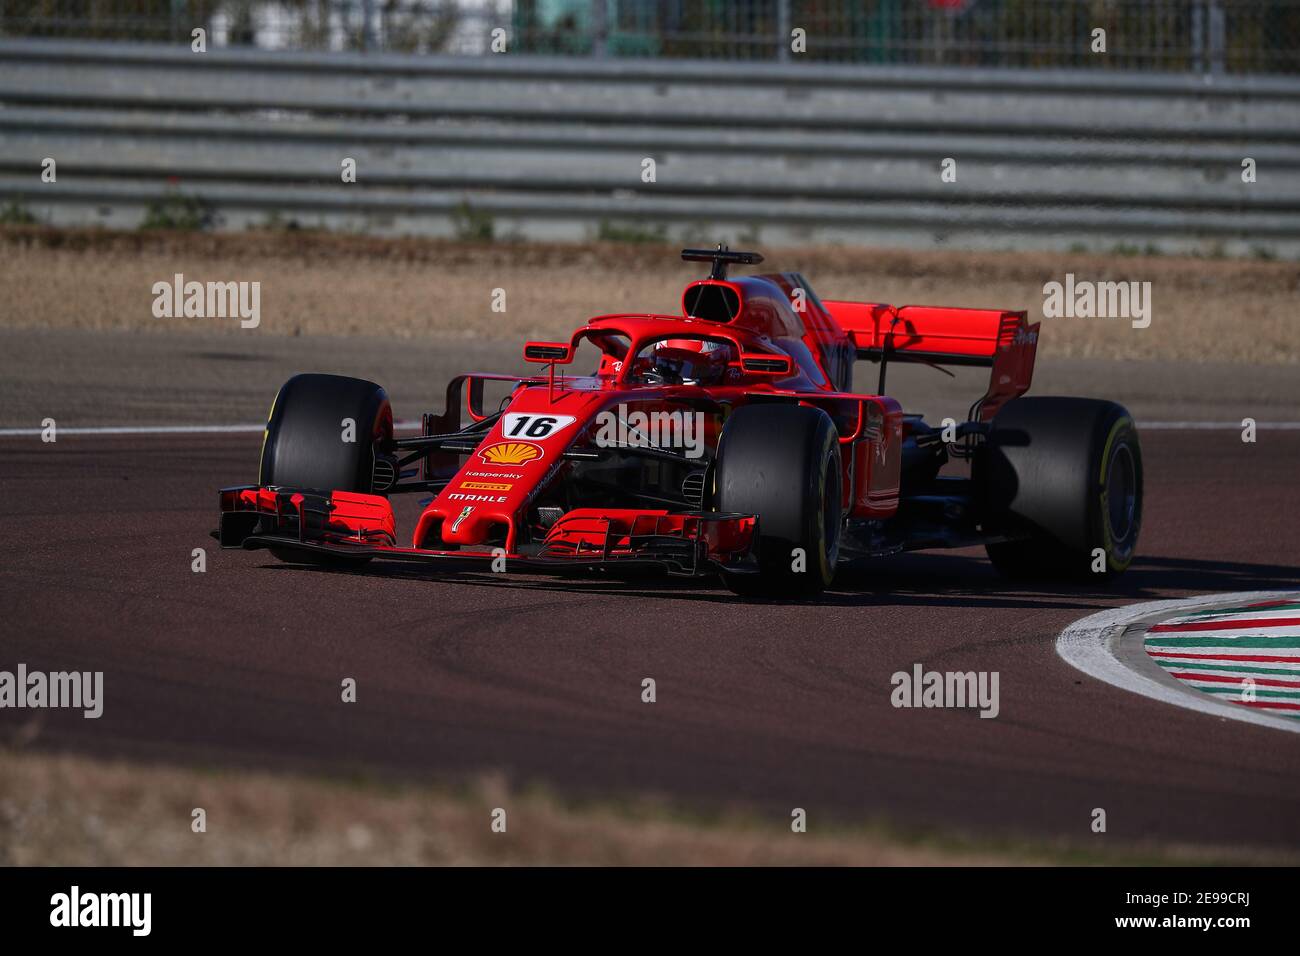 #16 Charles Leclerc Ferrari Fórmula 1 Campeonato Mundial 2021, pruebas privadas con el SF71H para la temporada 2021 en Fiorano, Módena. Foto de stock